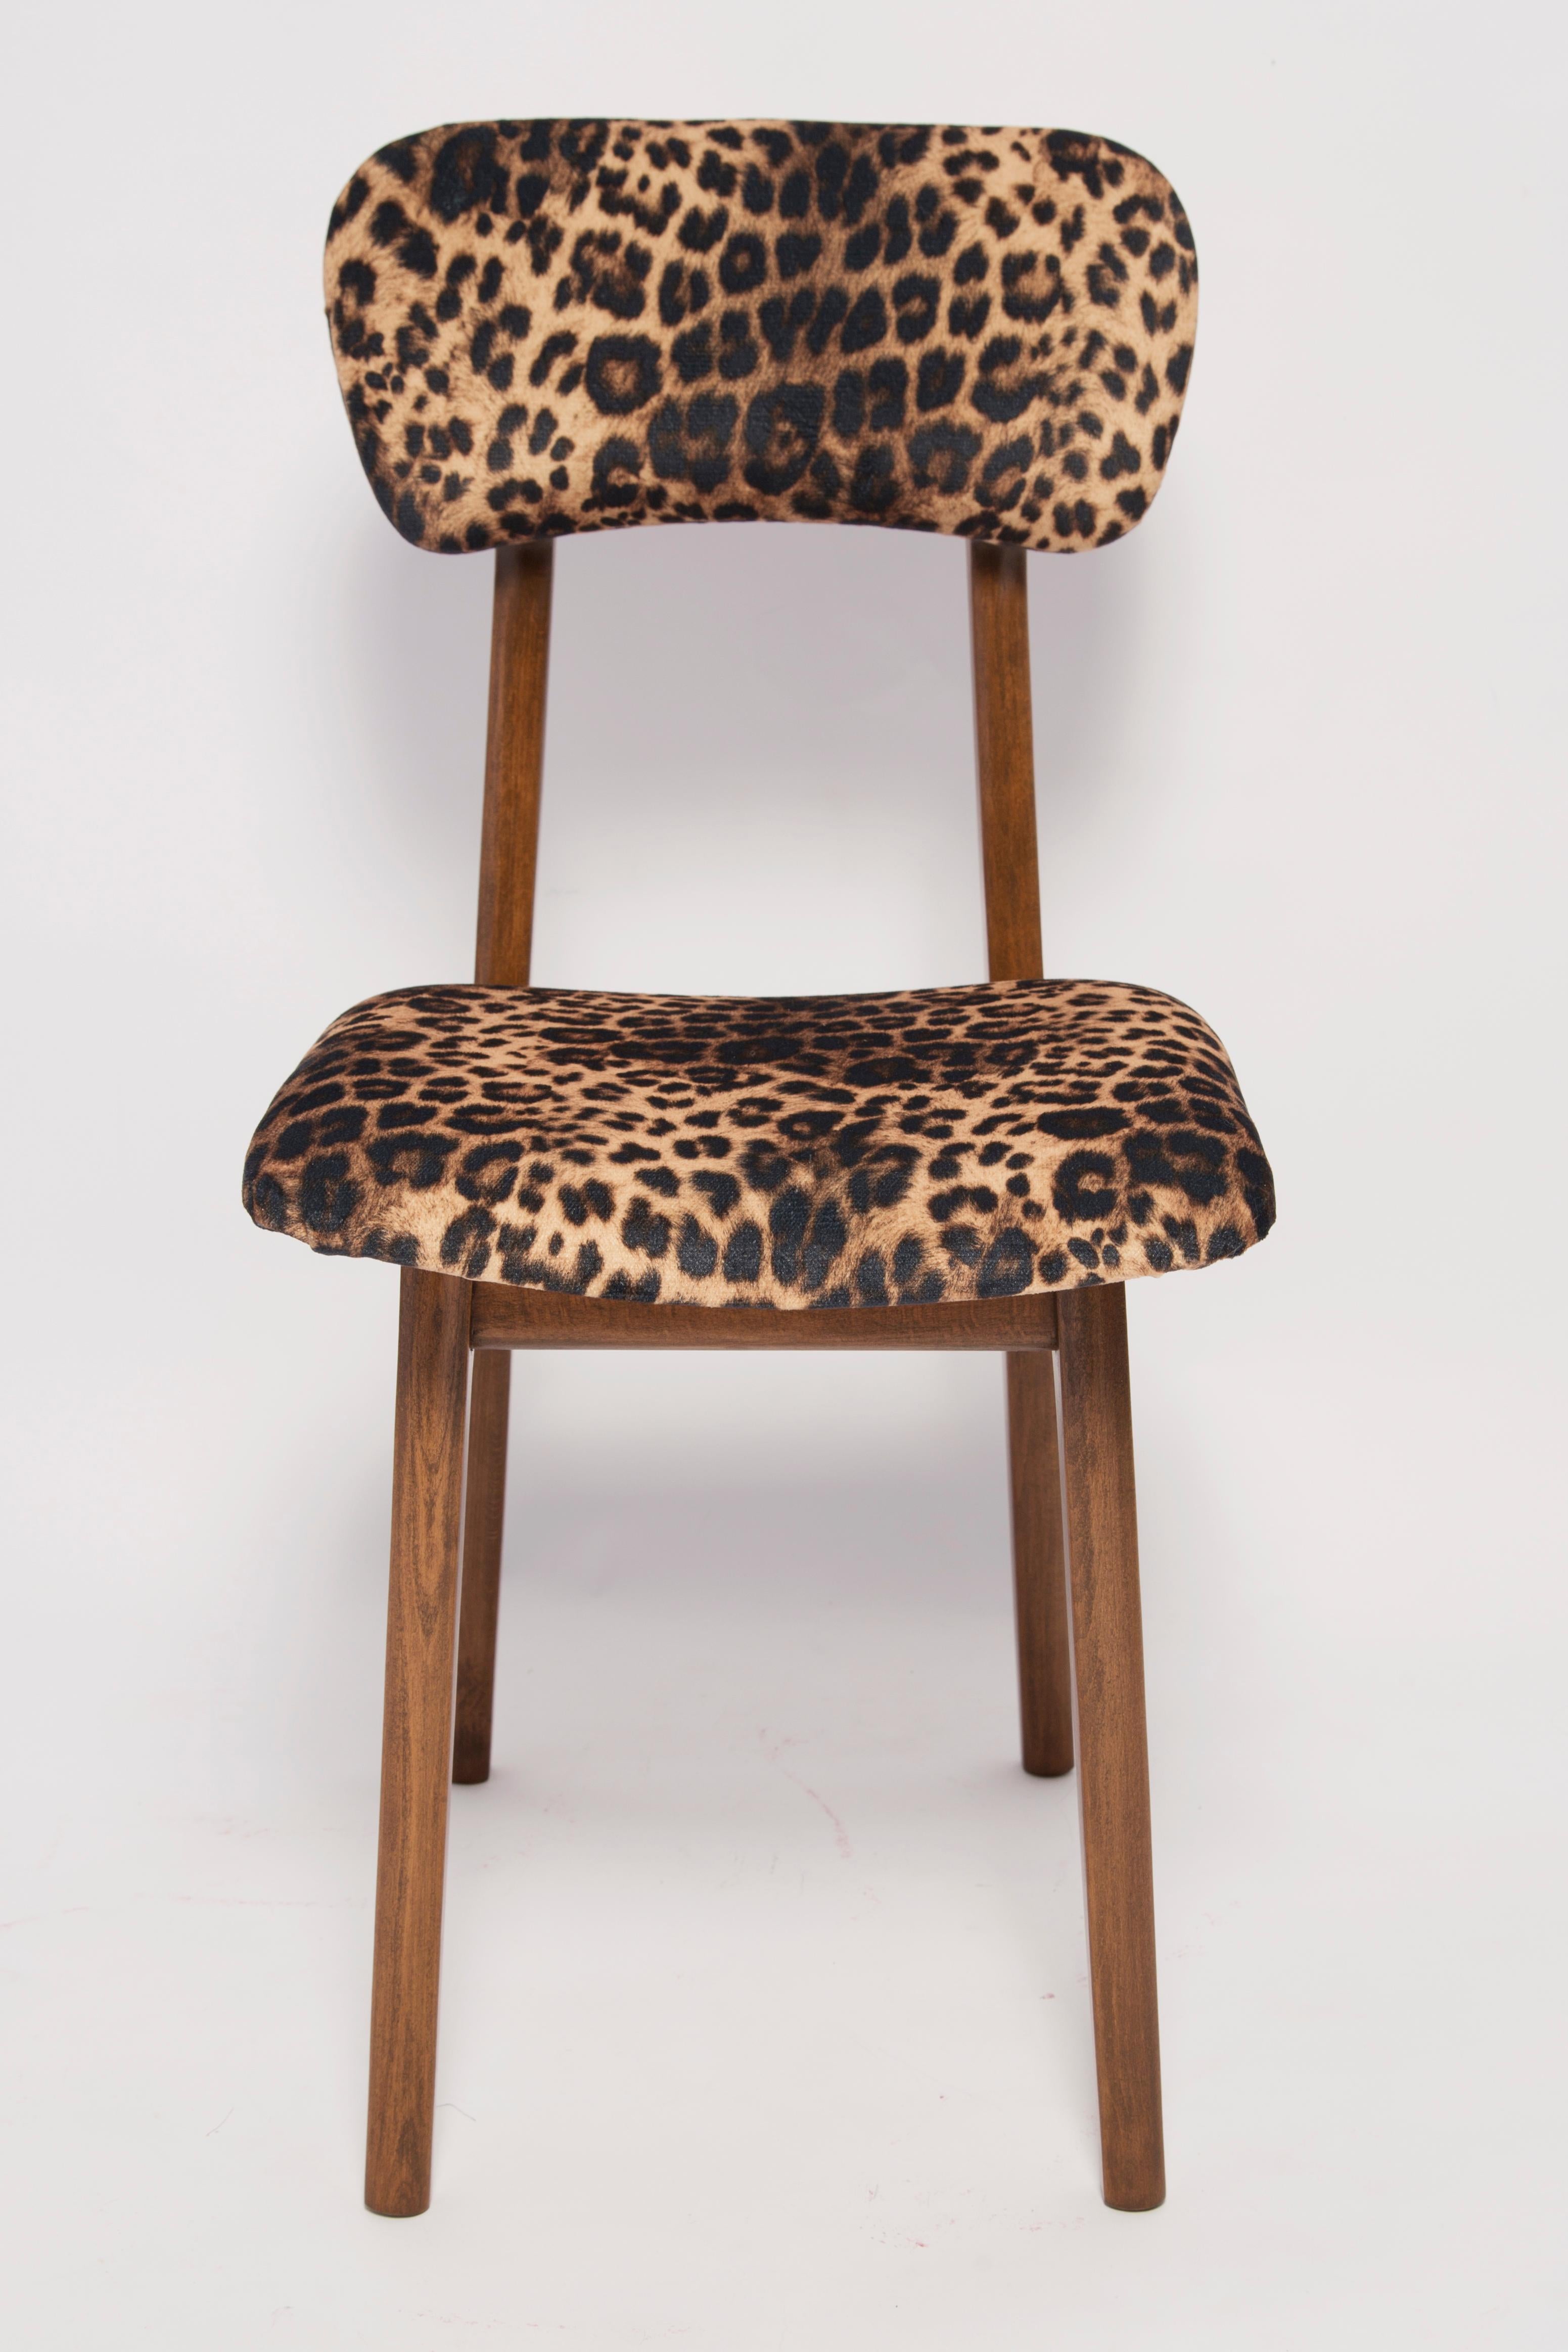 Stuhl entworfen von Prof. Rajmund Halas. Hergestellt aus Buchenholz. Der Stuhl wurde komplett neu gepolstert, die Holzarbeiten wurden aufgefrischt. Der Sitz ist mit grünem, strapazierfähigem und angenehm zu berührendem Bouclé-Stoff bezogen. Der